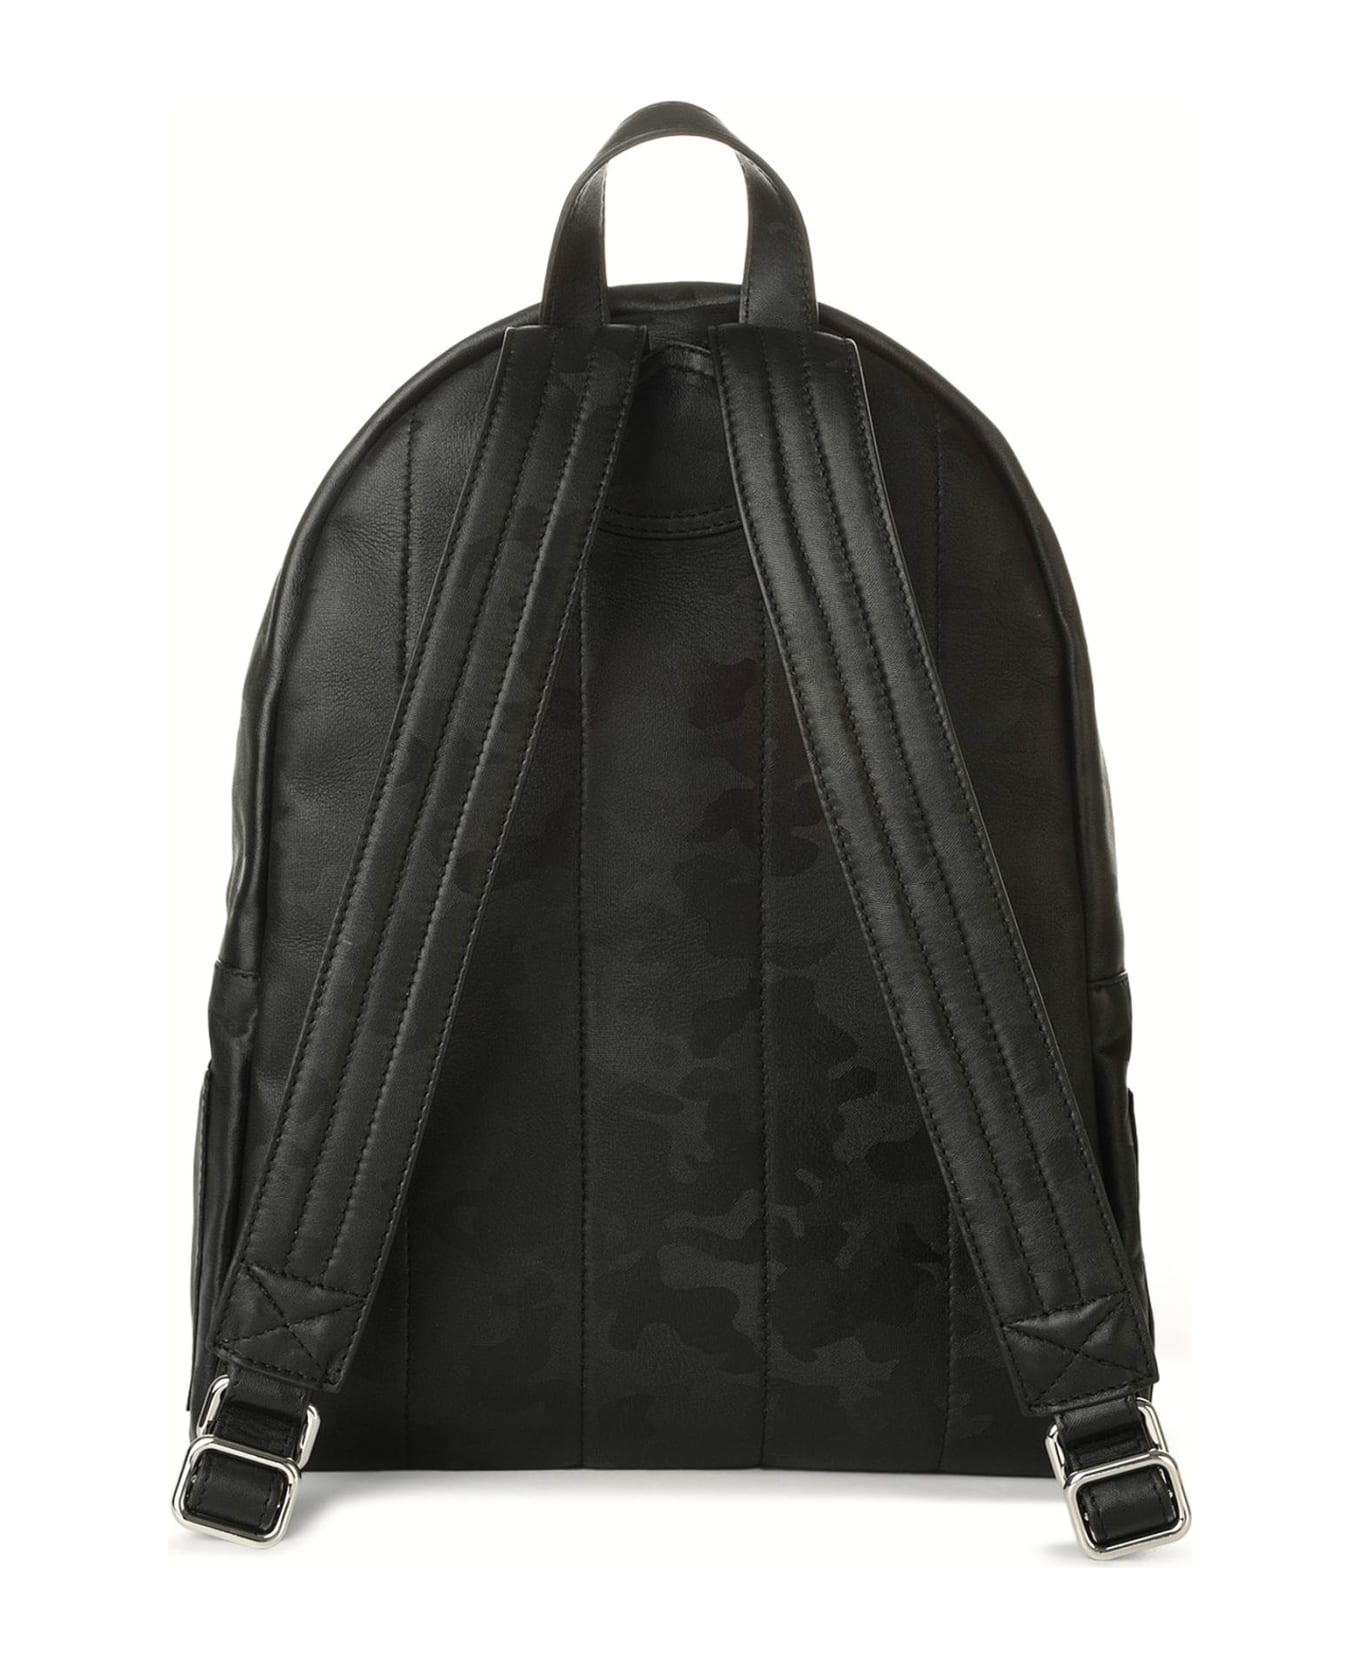 Orciani Skyline Black Leather Backpack - Black バックパック